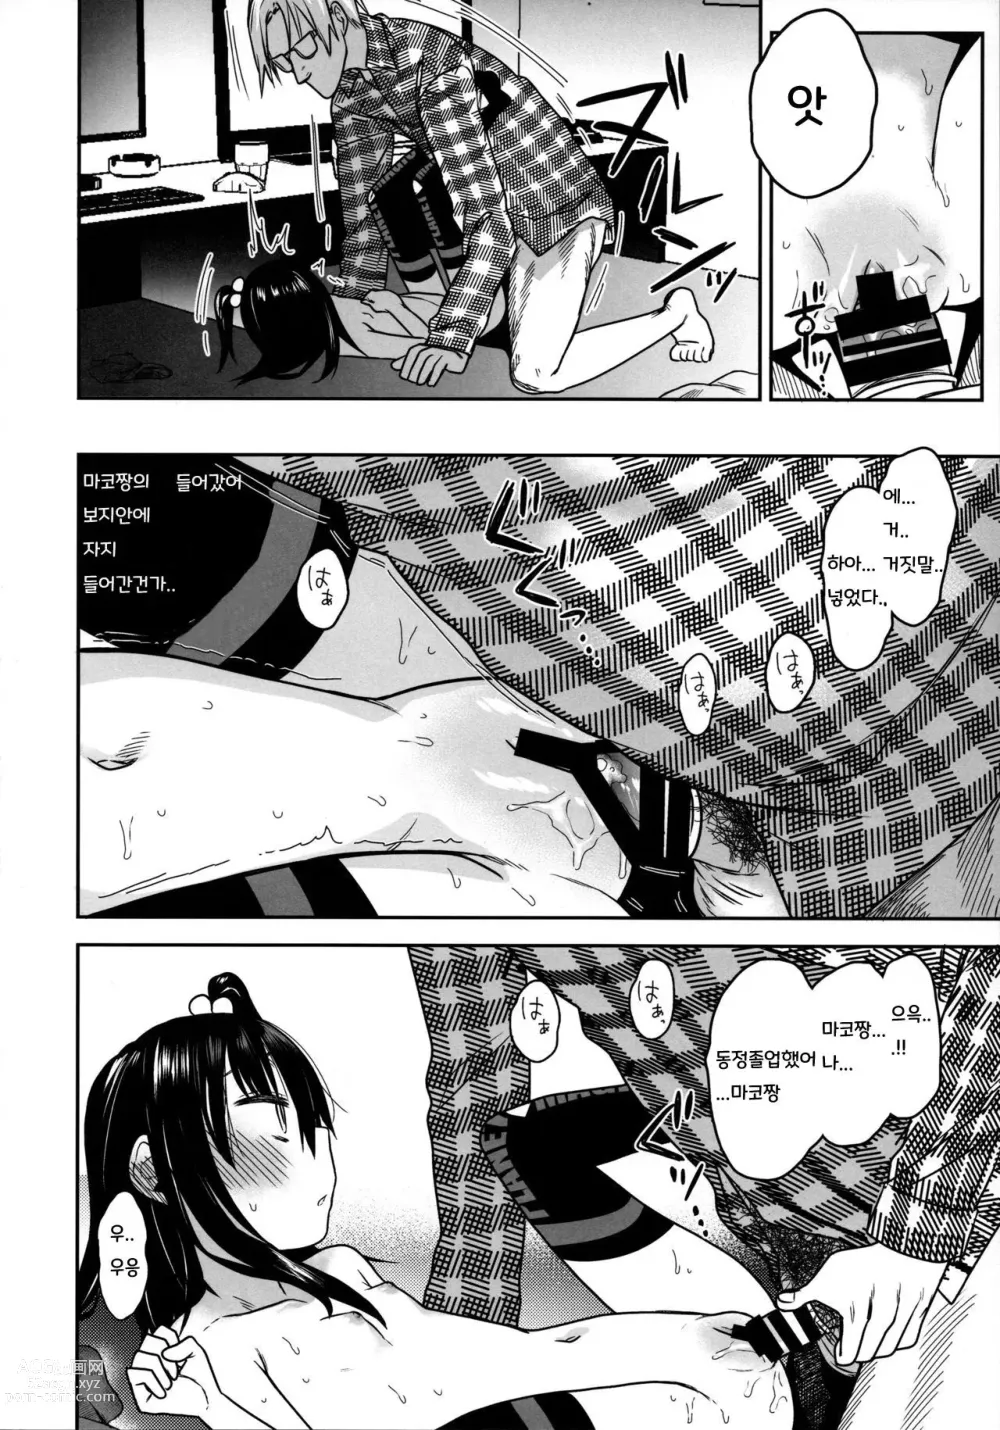 Page 26 of doujinshi Tonari no Mako-chan Season 2 Vol. 2